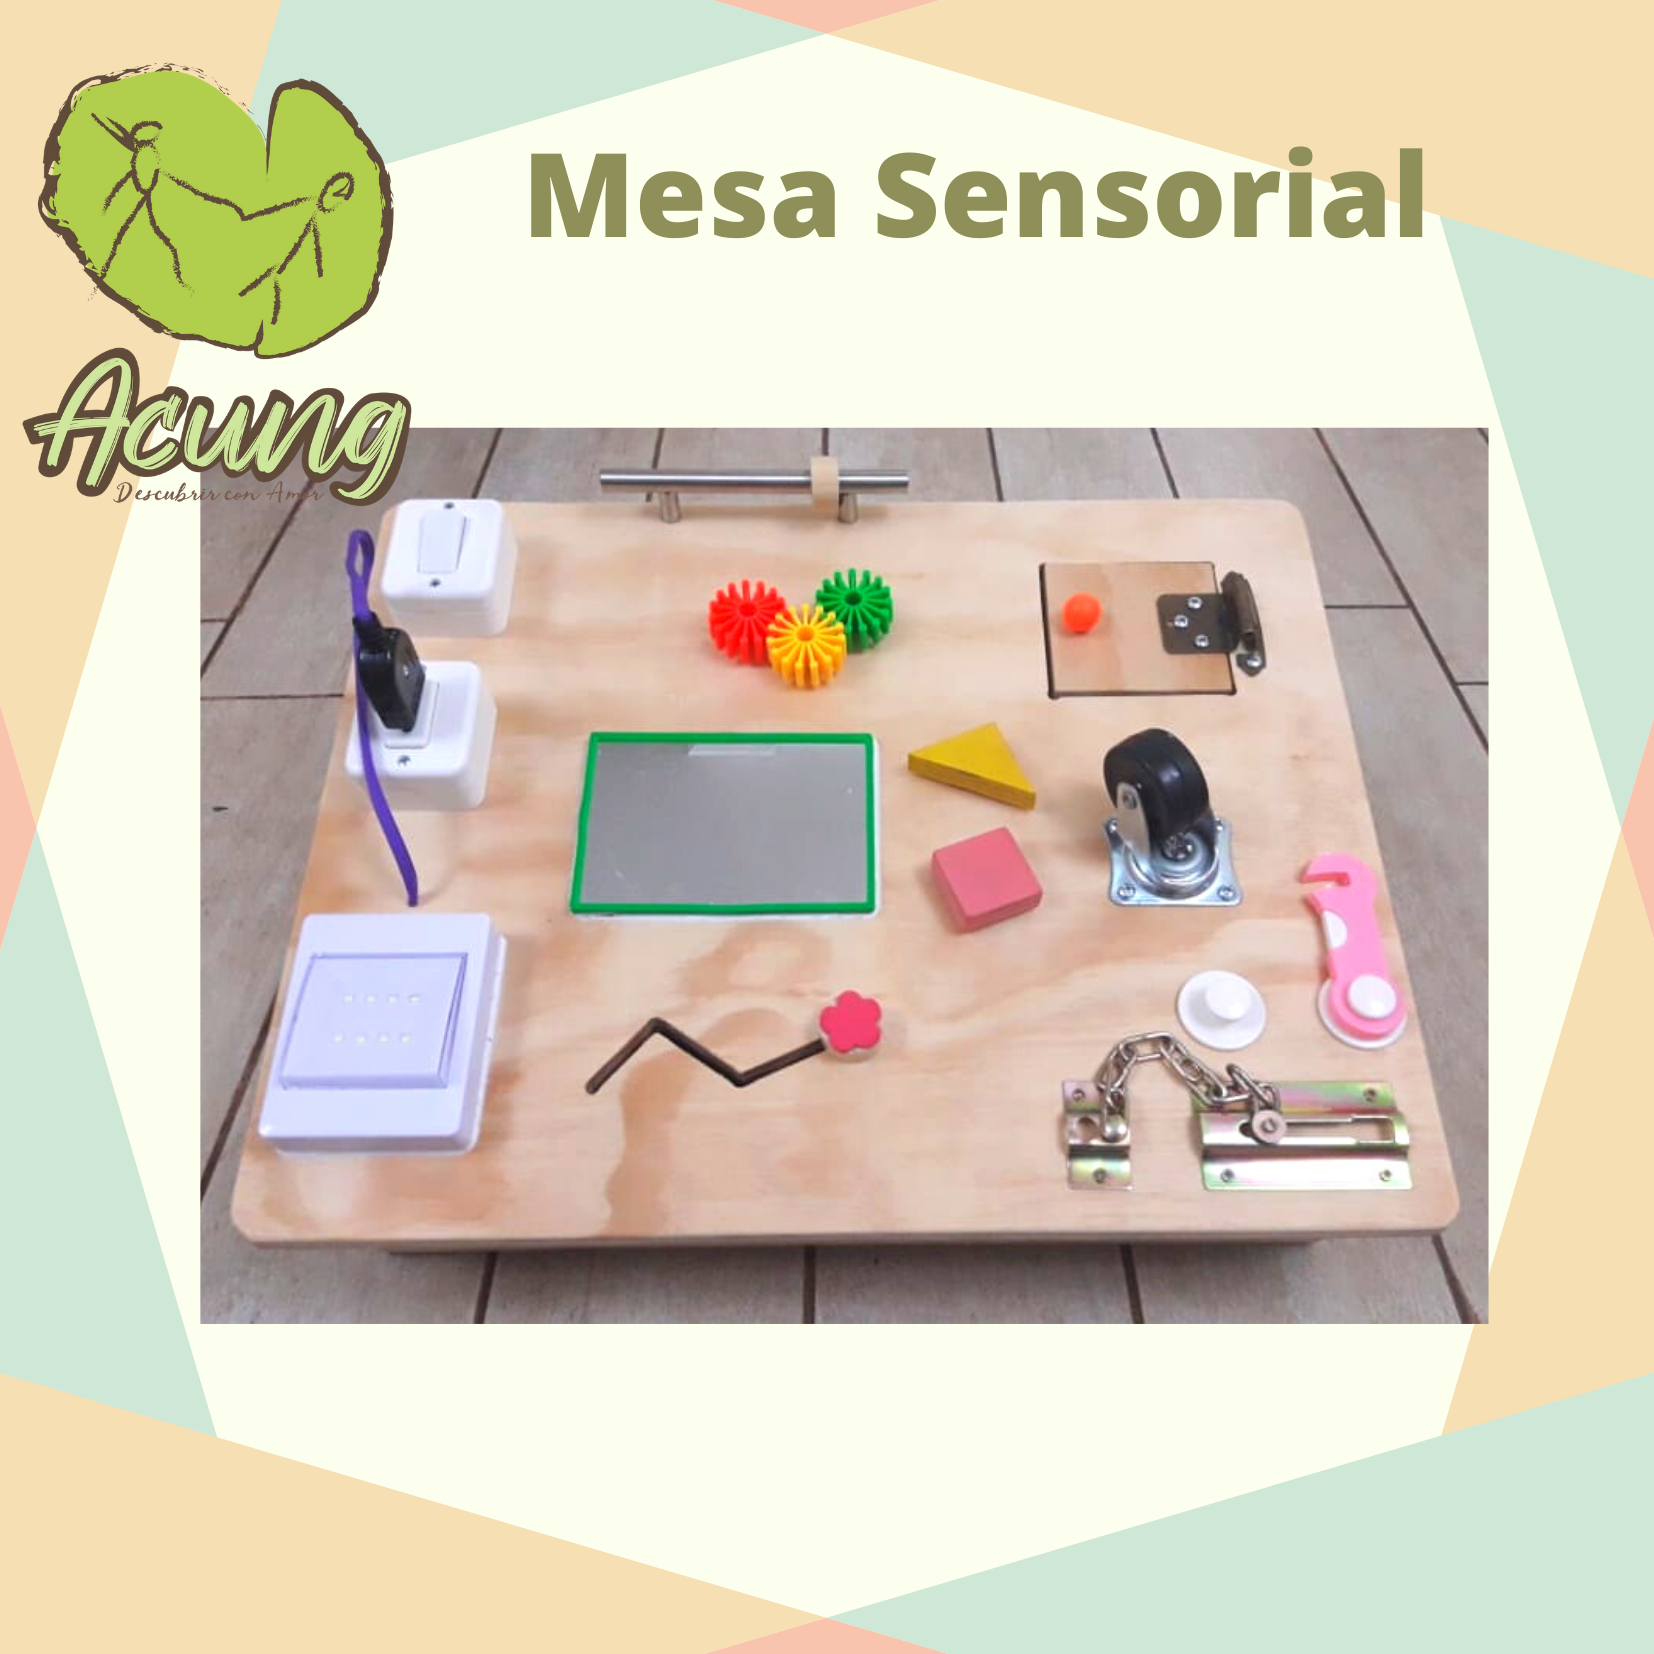 Mesa Sensorial – Acung